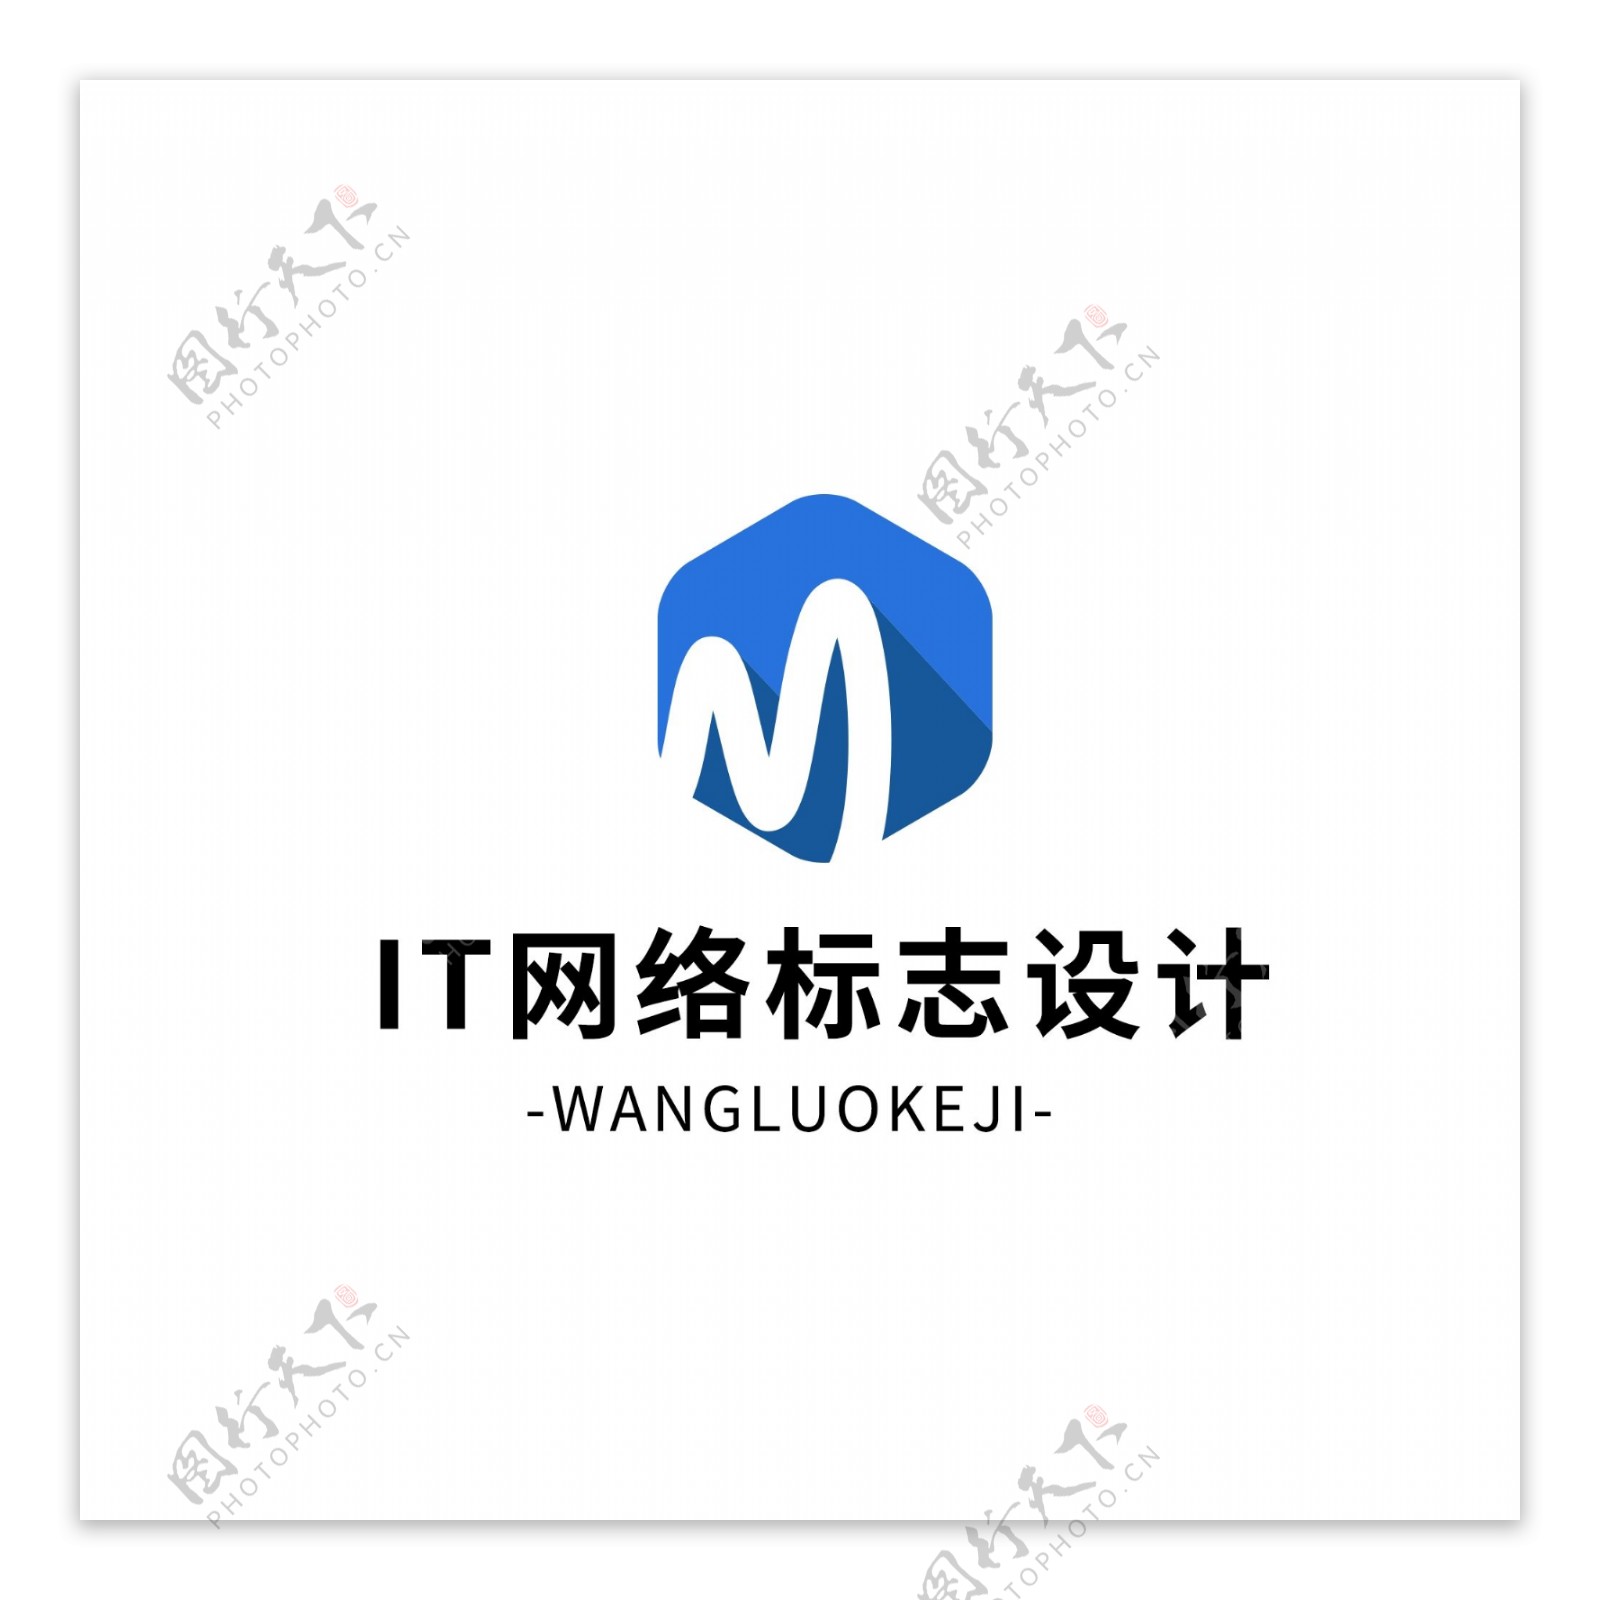 原创简约大气IT网络logo标志设计